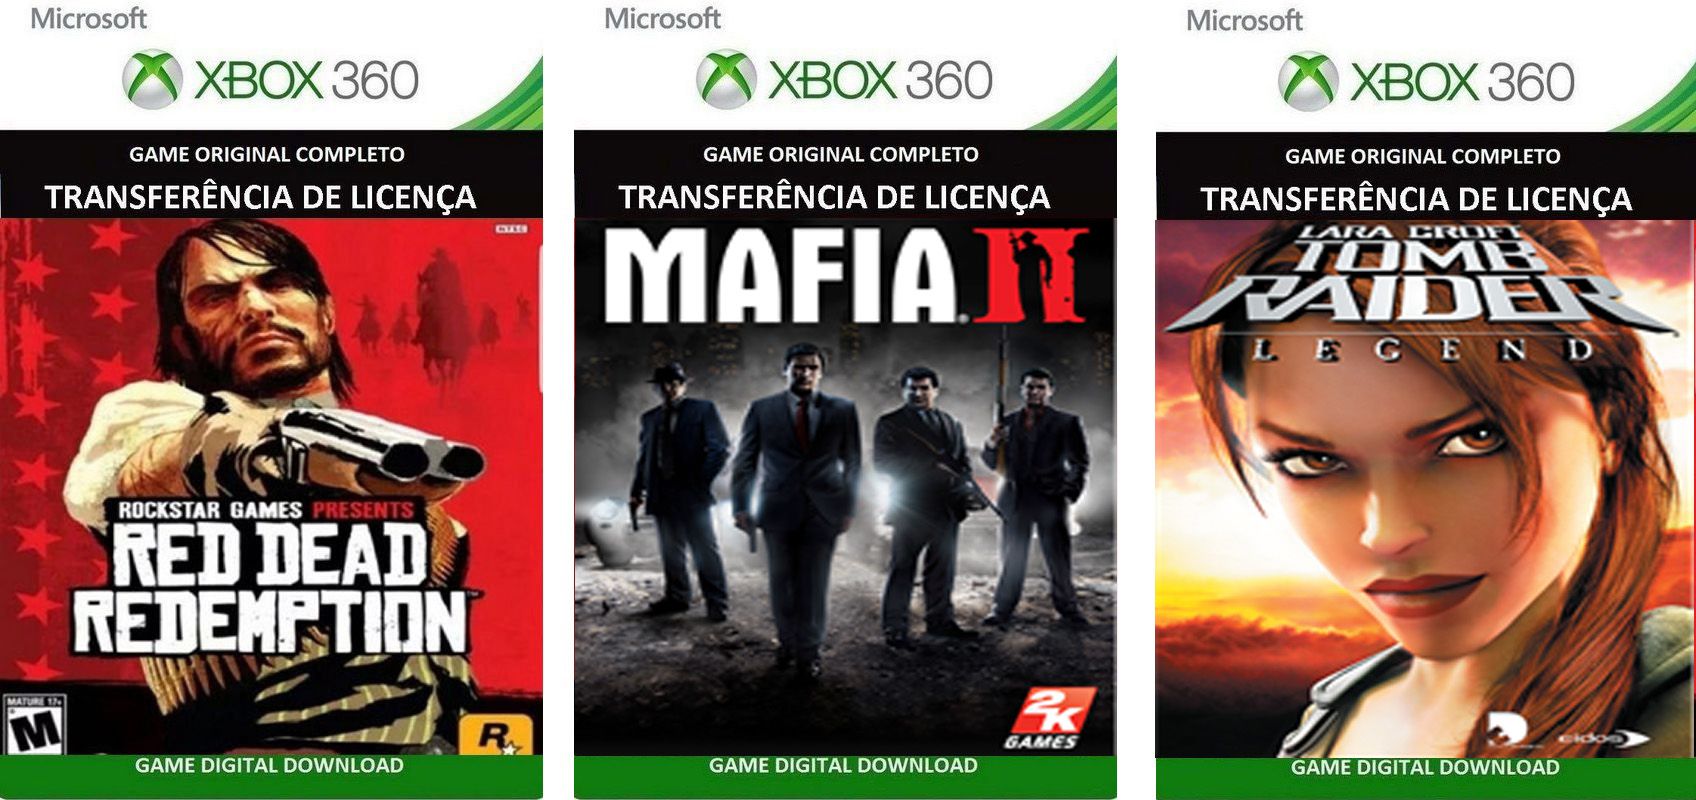 Jogo para Xbox 360 Mafia II - DHCP Informática